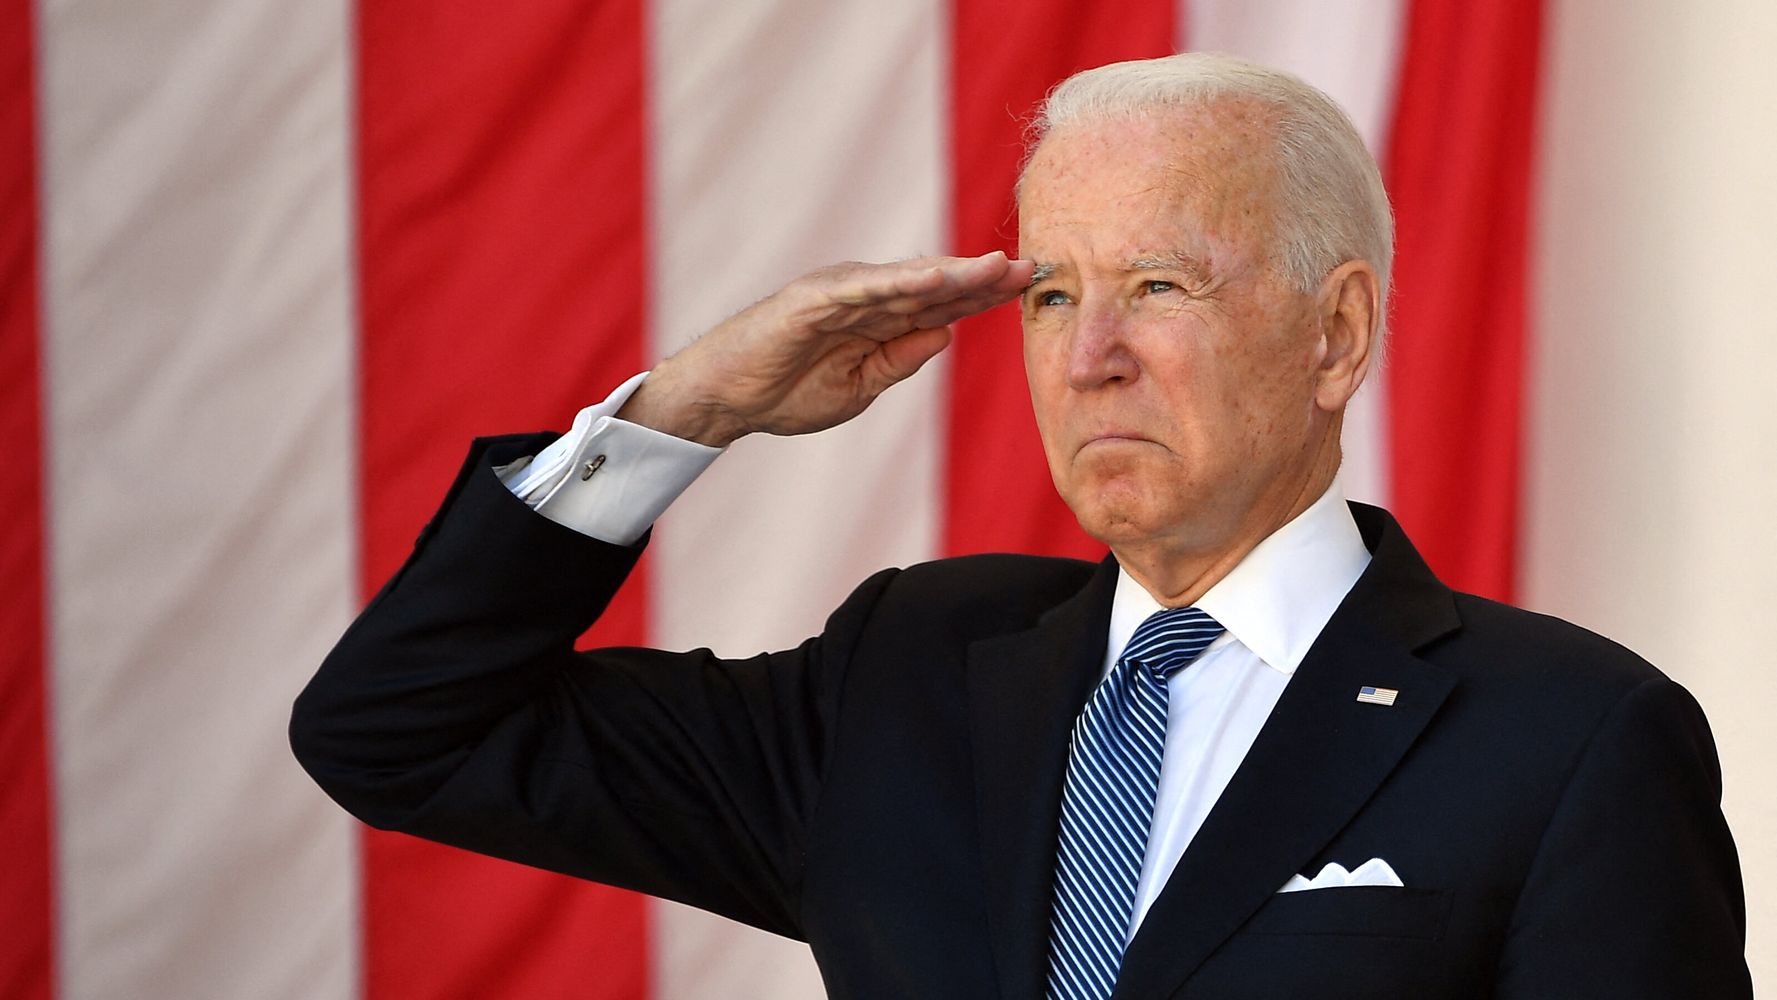 Biden Commemorates Fallen Soldiers On Memorial Day